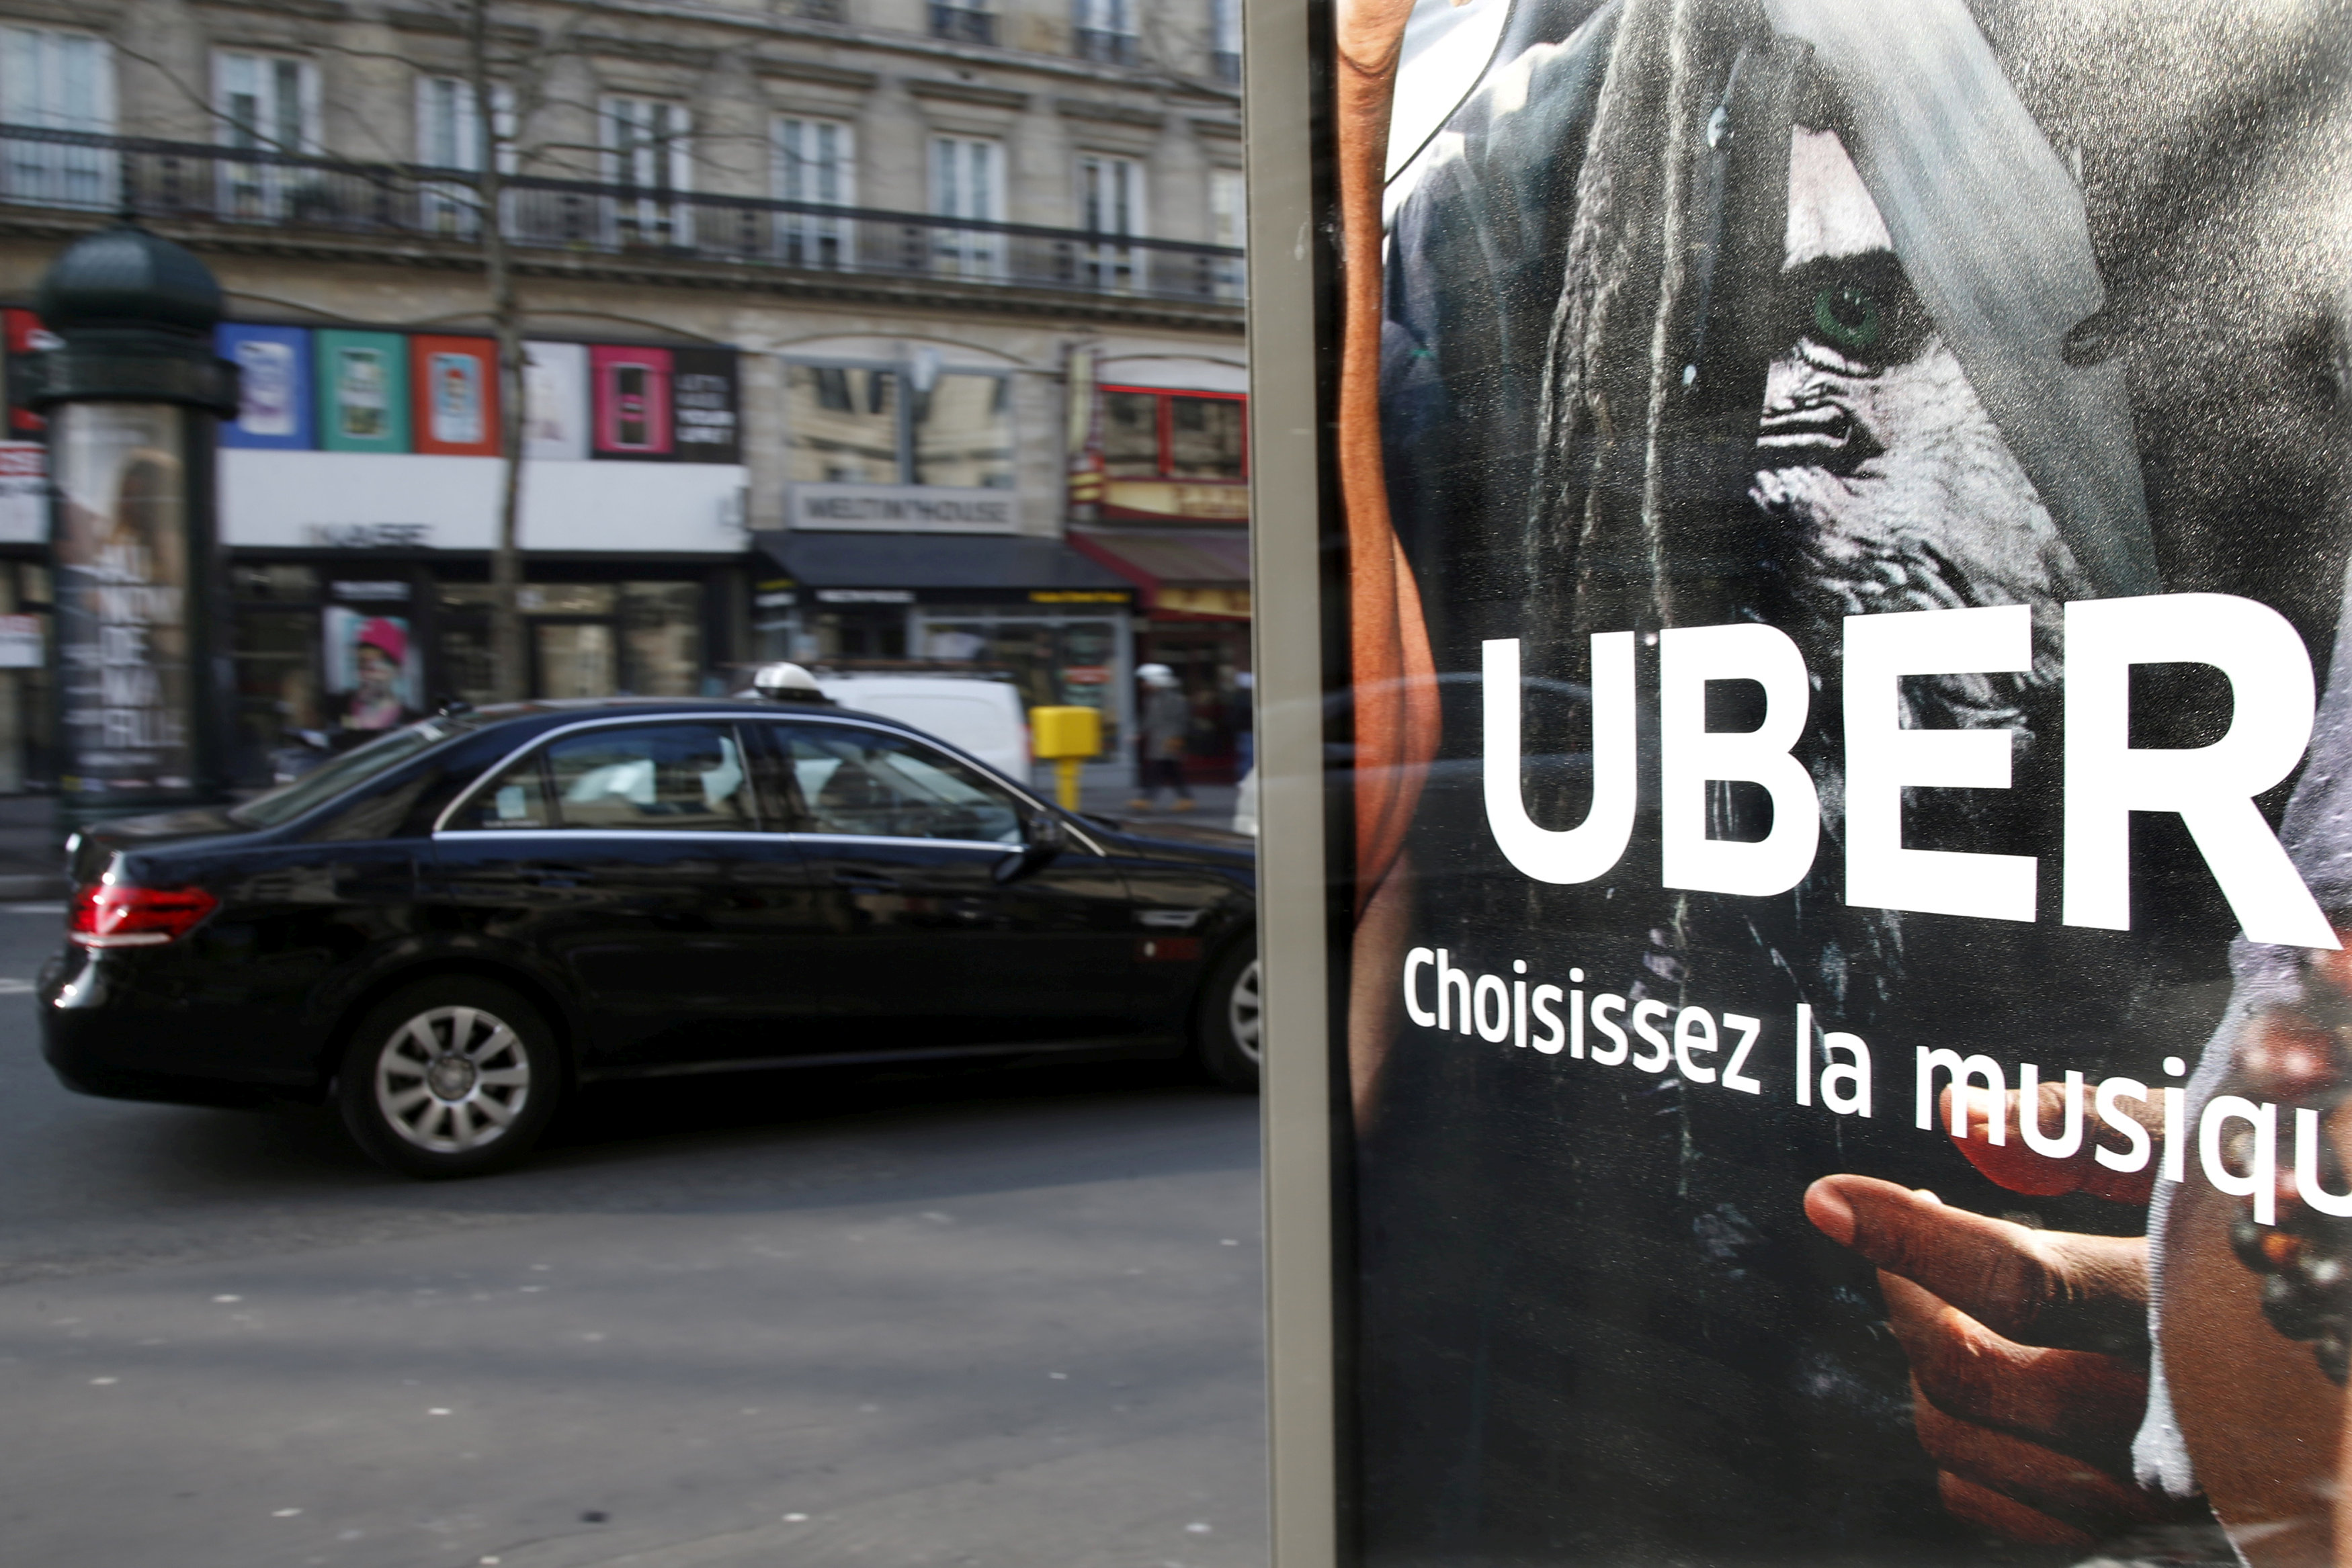 Scandal-hit Uber hits the road to reassure global regulators